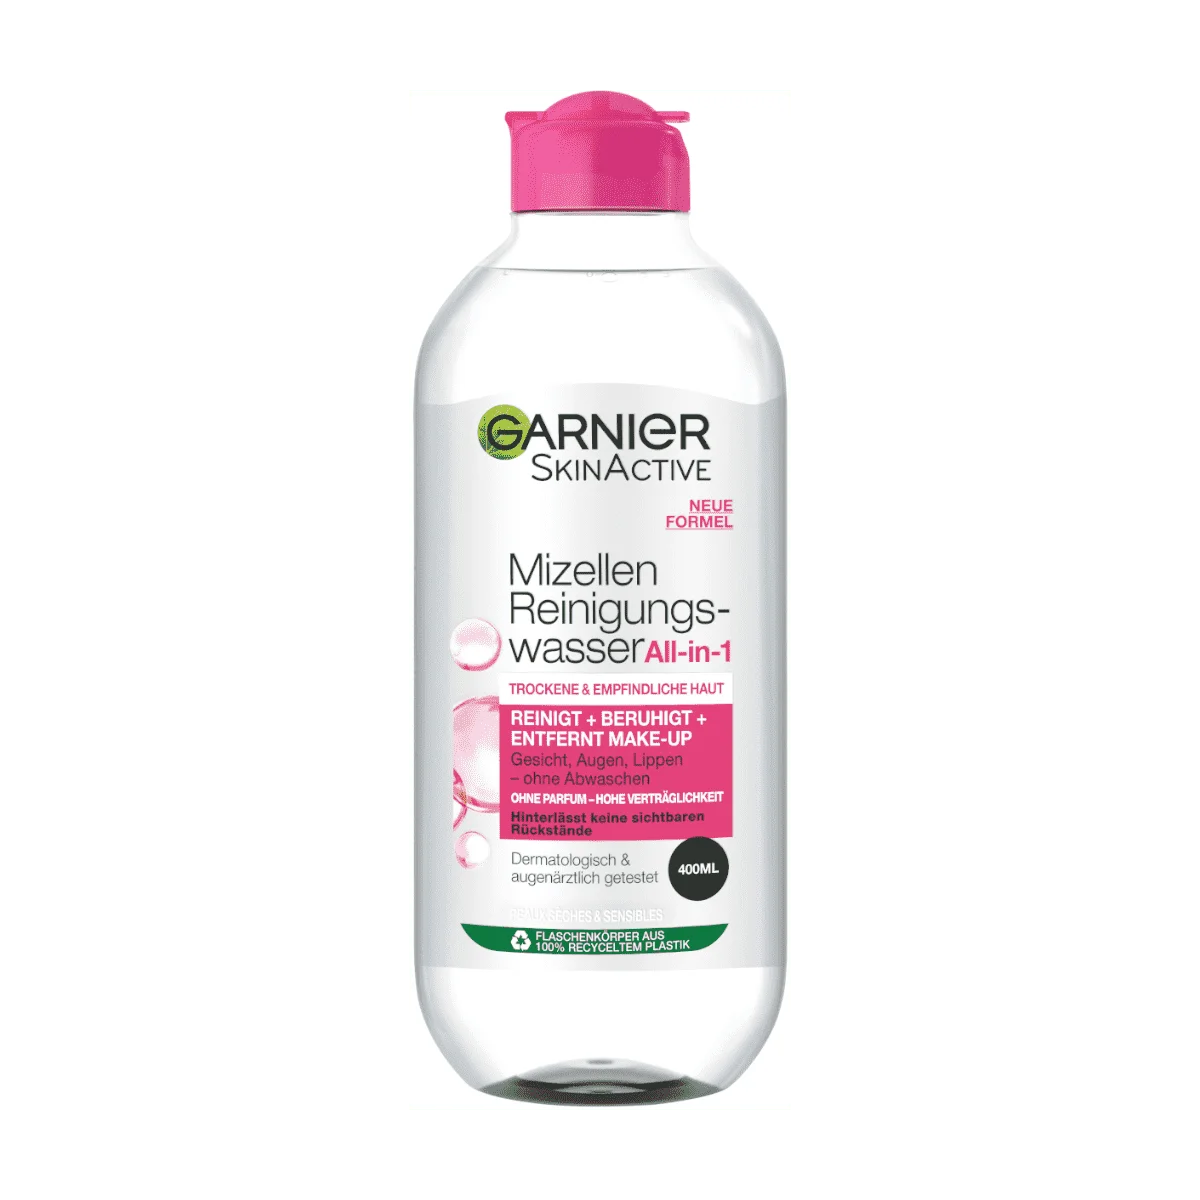 Garnier SkinActive Mizellen Reinigungswasser All-in-1 Trockene & Empfindliche Haut, 400 ml